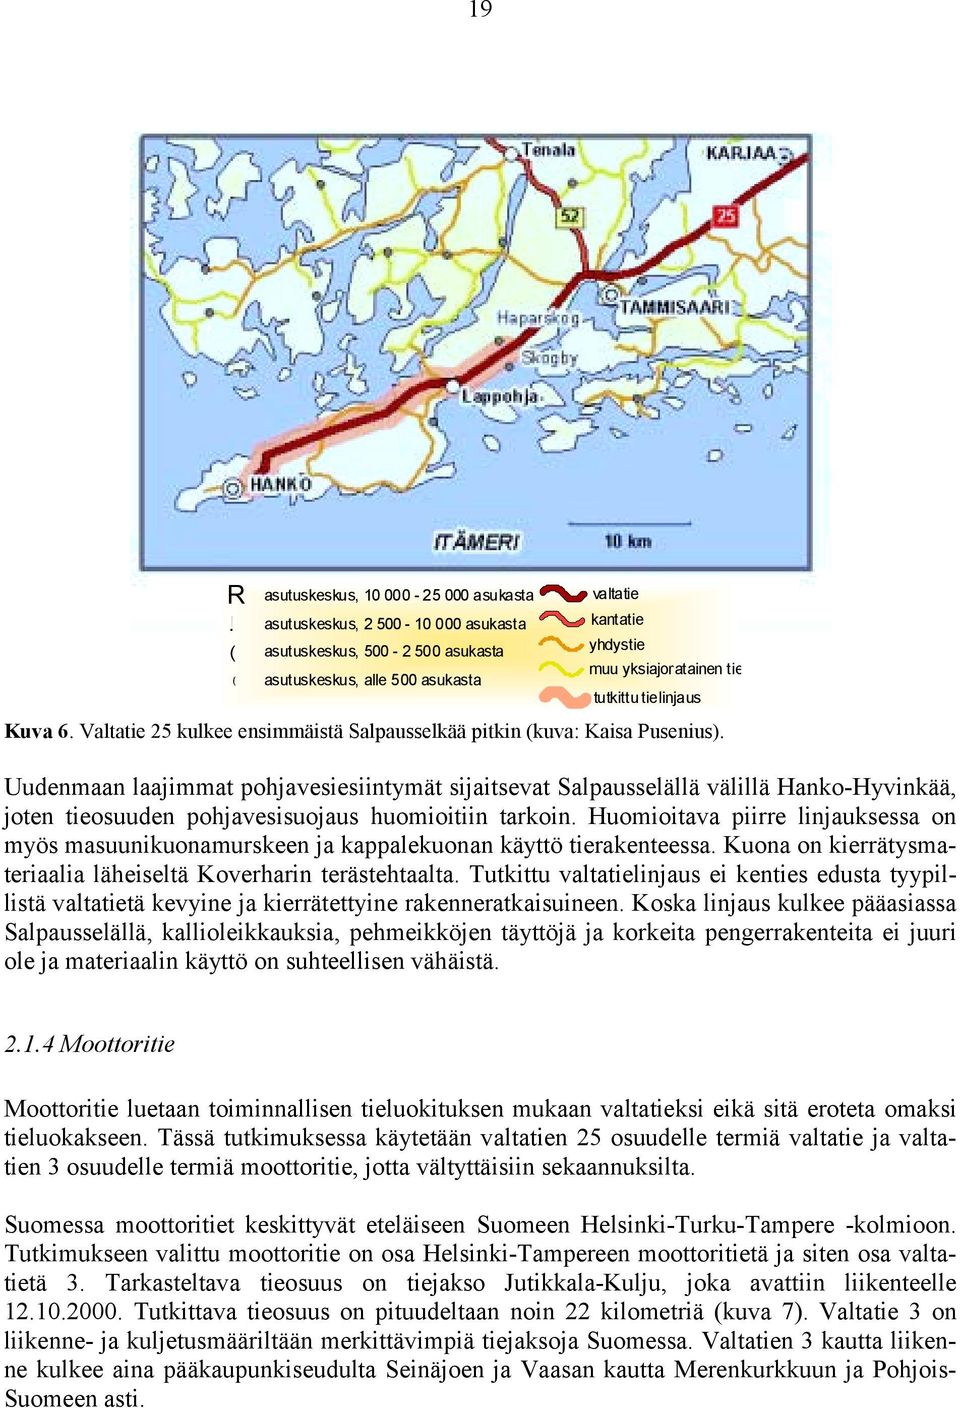 Uudenmaan laajimmat pohjavesiesiintymät sijaitsevat Salpausselällä välillä Hanko-Hyvinkää, joten tieosuuden pohjavesisuojaus huomioitiin tarkoin.